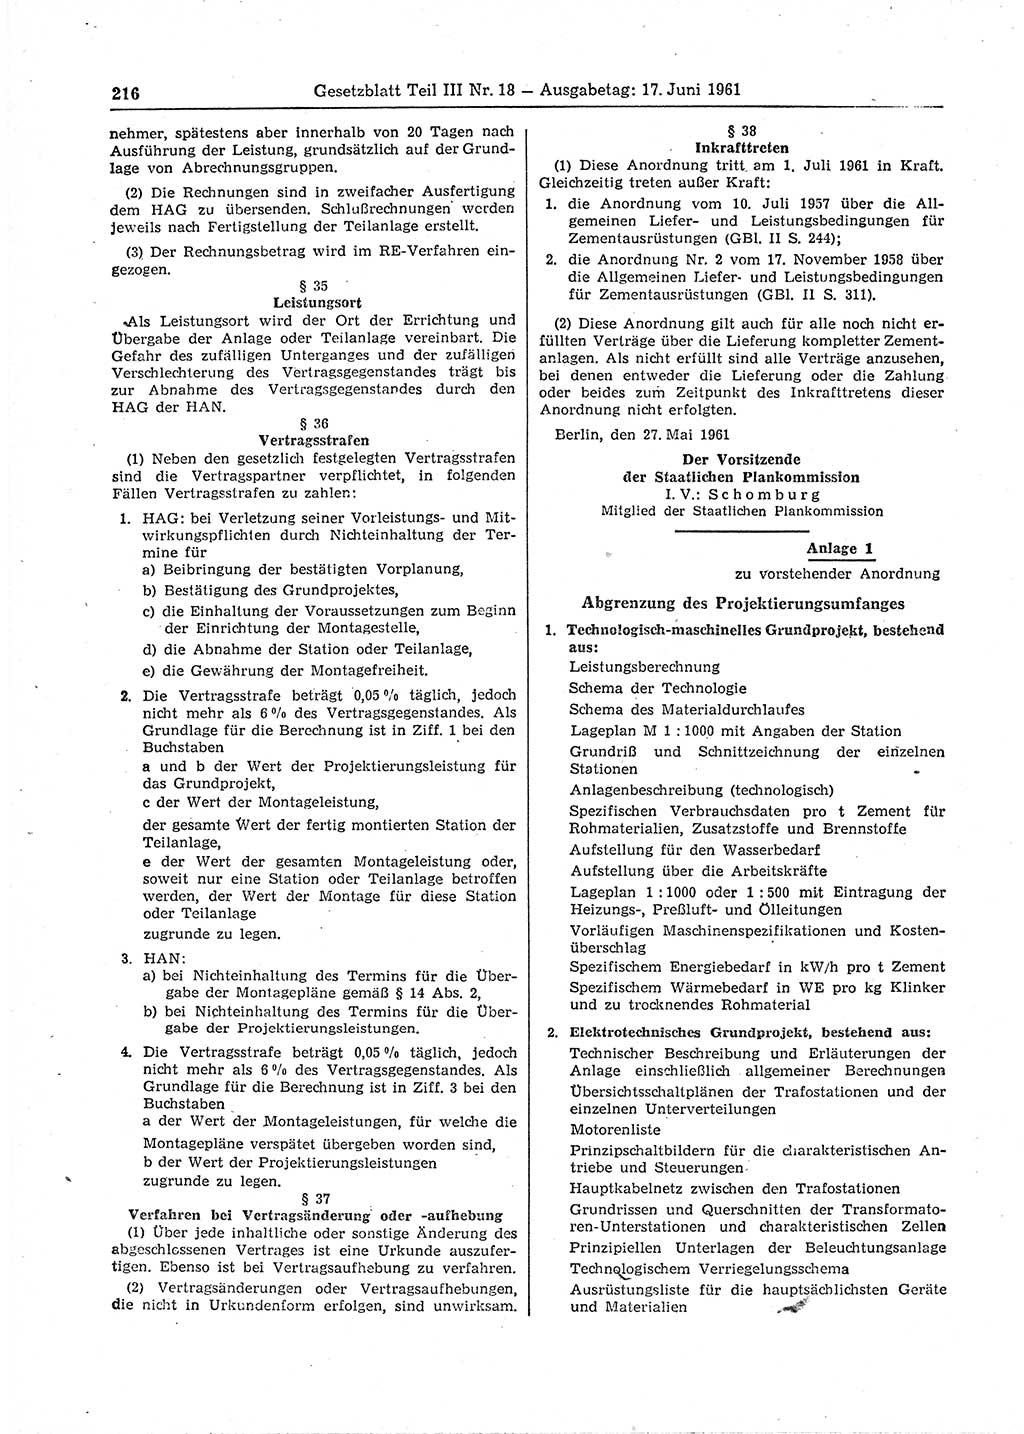 Gesetzblatt (GBl.) der Deutschen Demokratischen Republik (DDR) Teil ⅠⅠⅠ 1961, Seite 216 (GBl. DDR ⅠⅠⅠ 1961, S. 216)